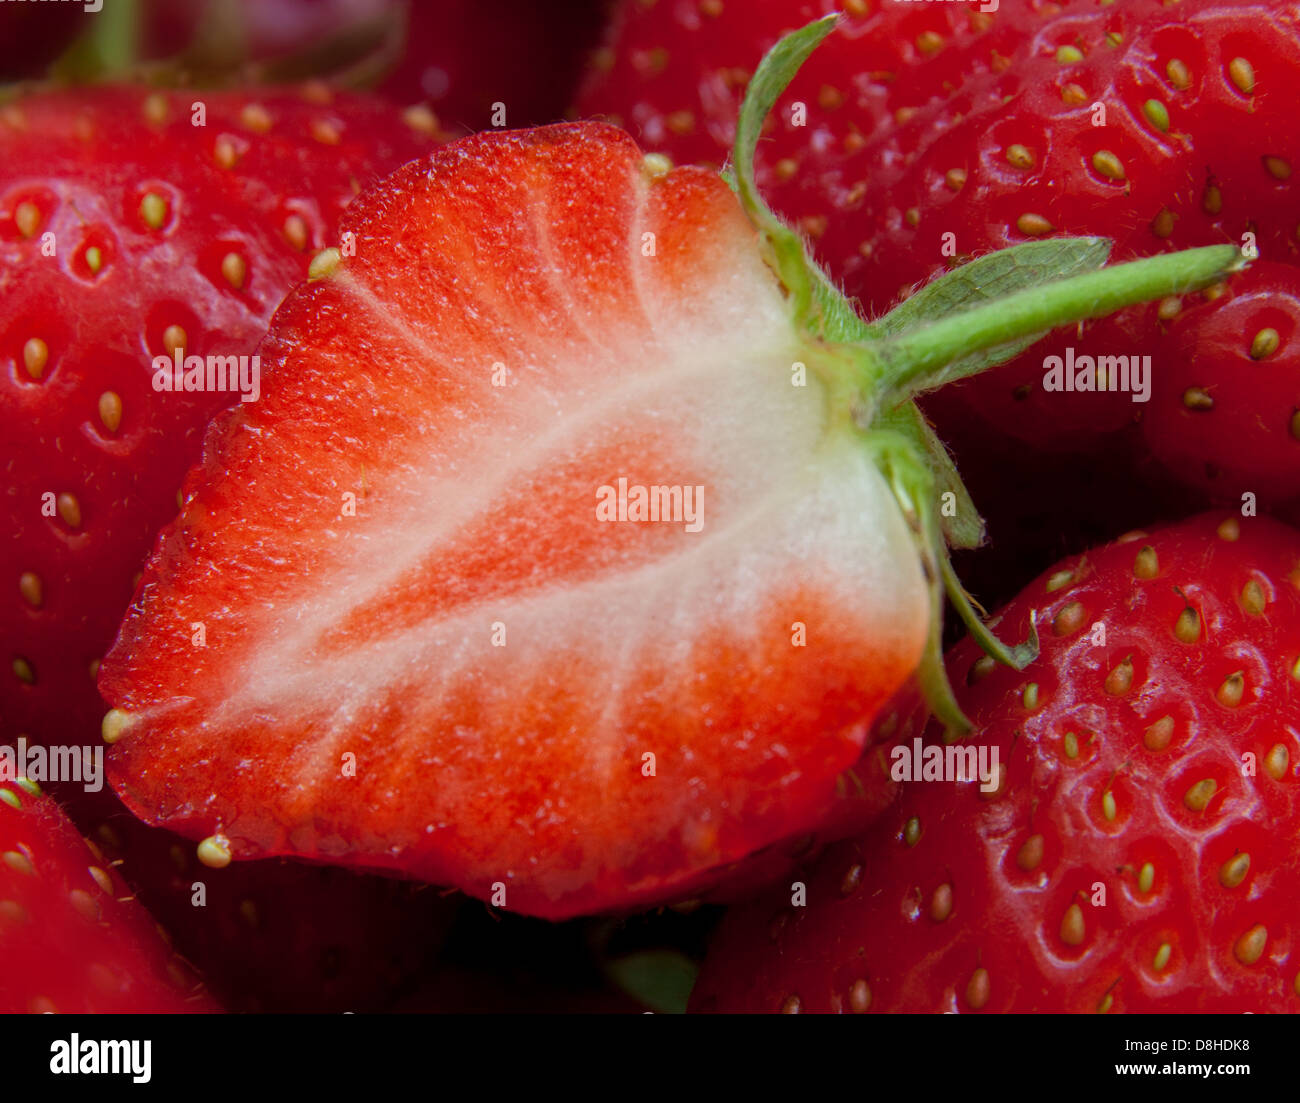 Les fraises britanniques sont un fruit d'été rouge si brillant ! Gros plan d'un fruit coupé en deux, montrant les graines Banque D'Images